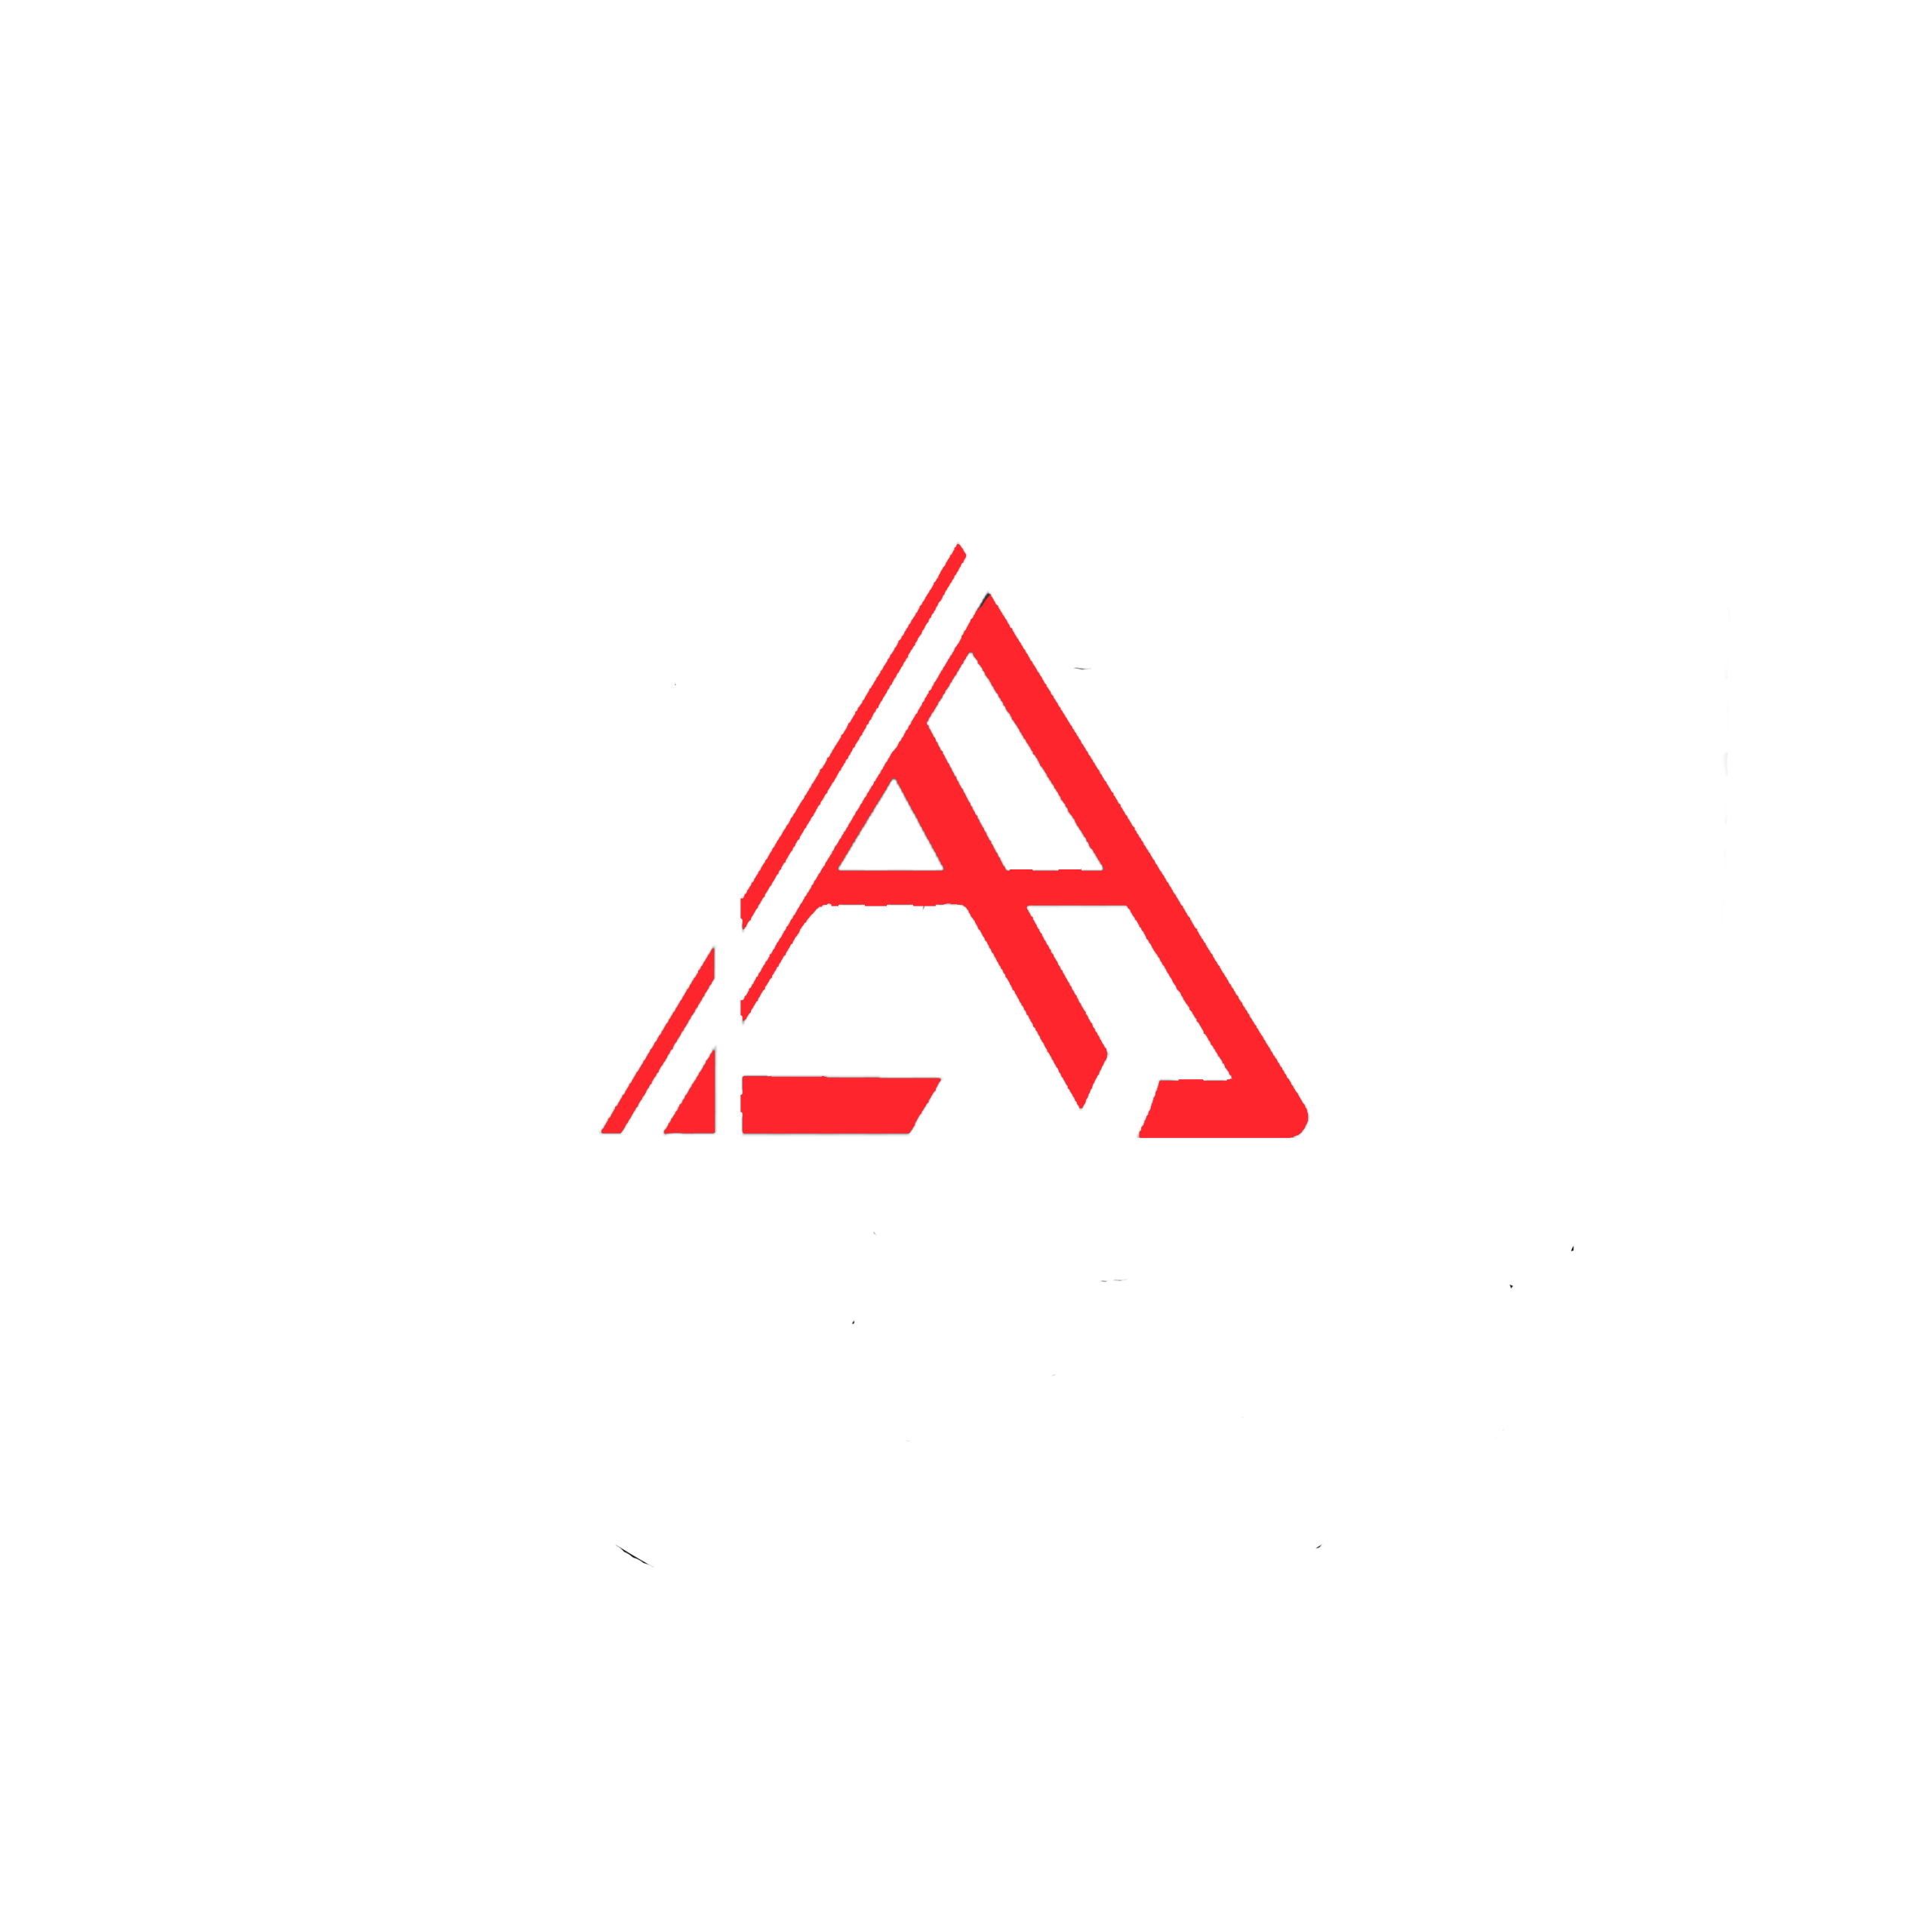 Notarius Publicus